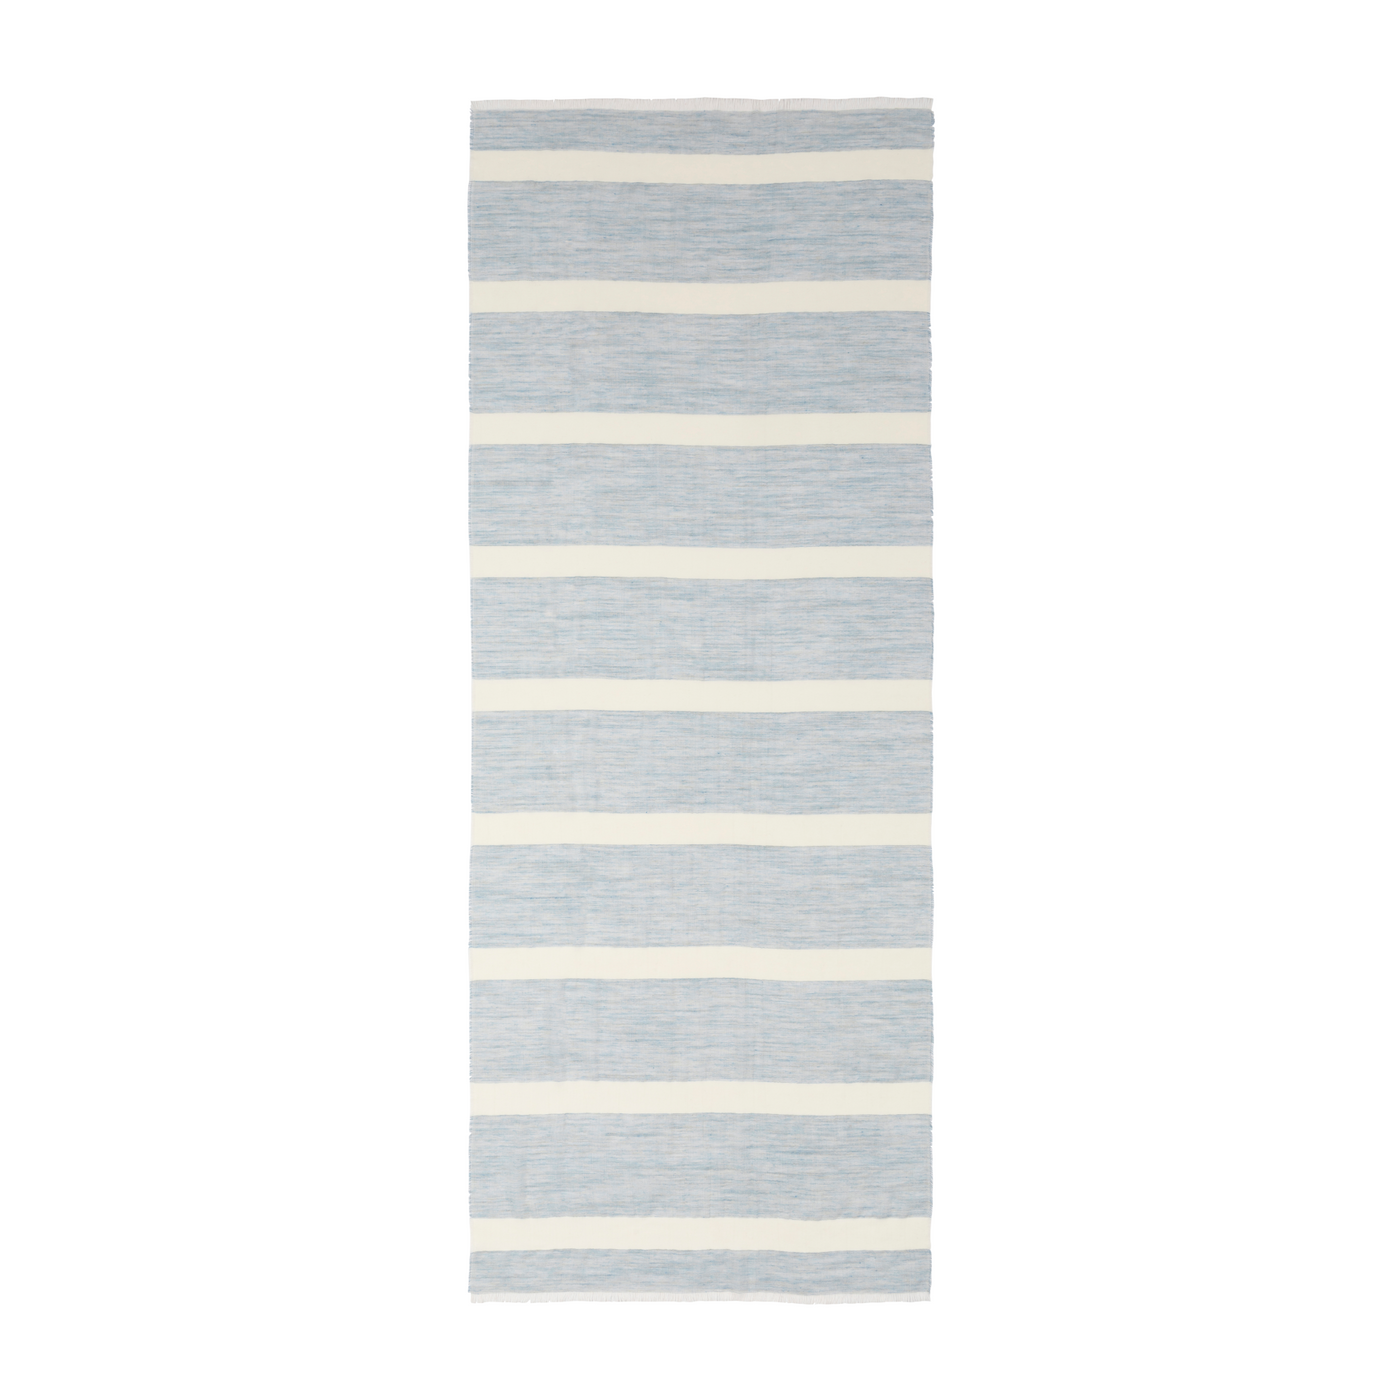 Melange Stripe Scarf - Light Blue